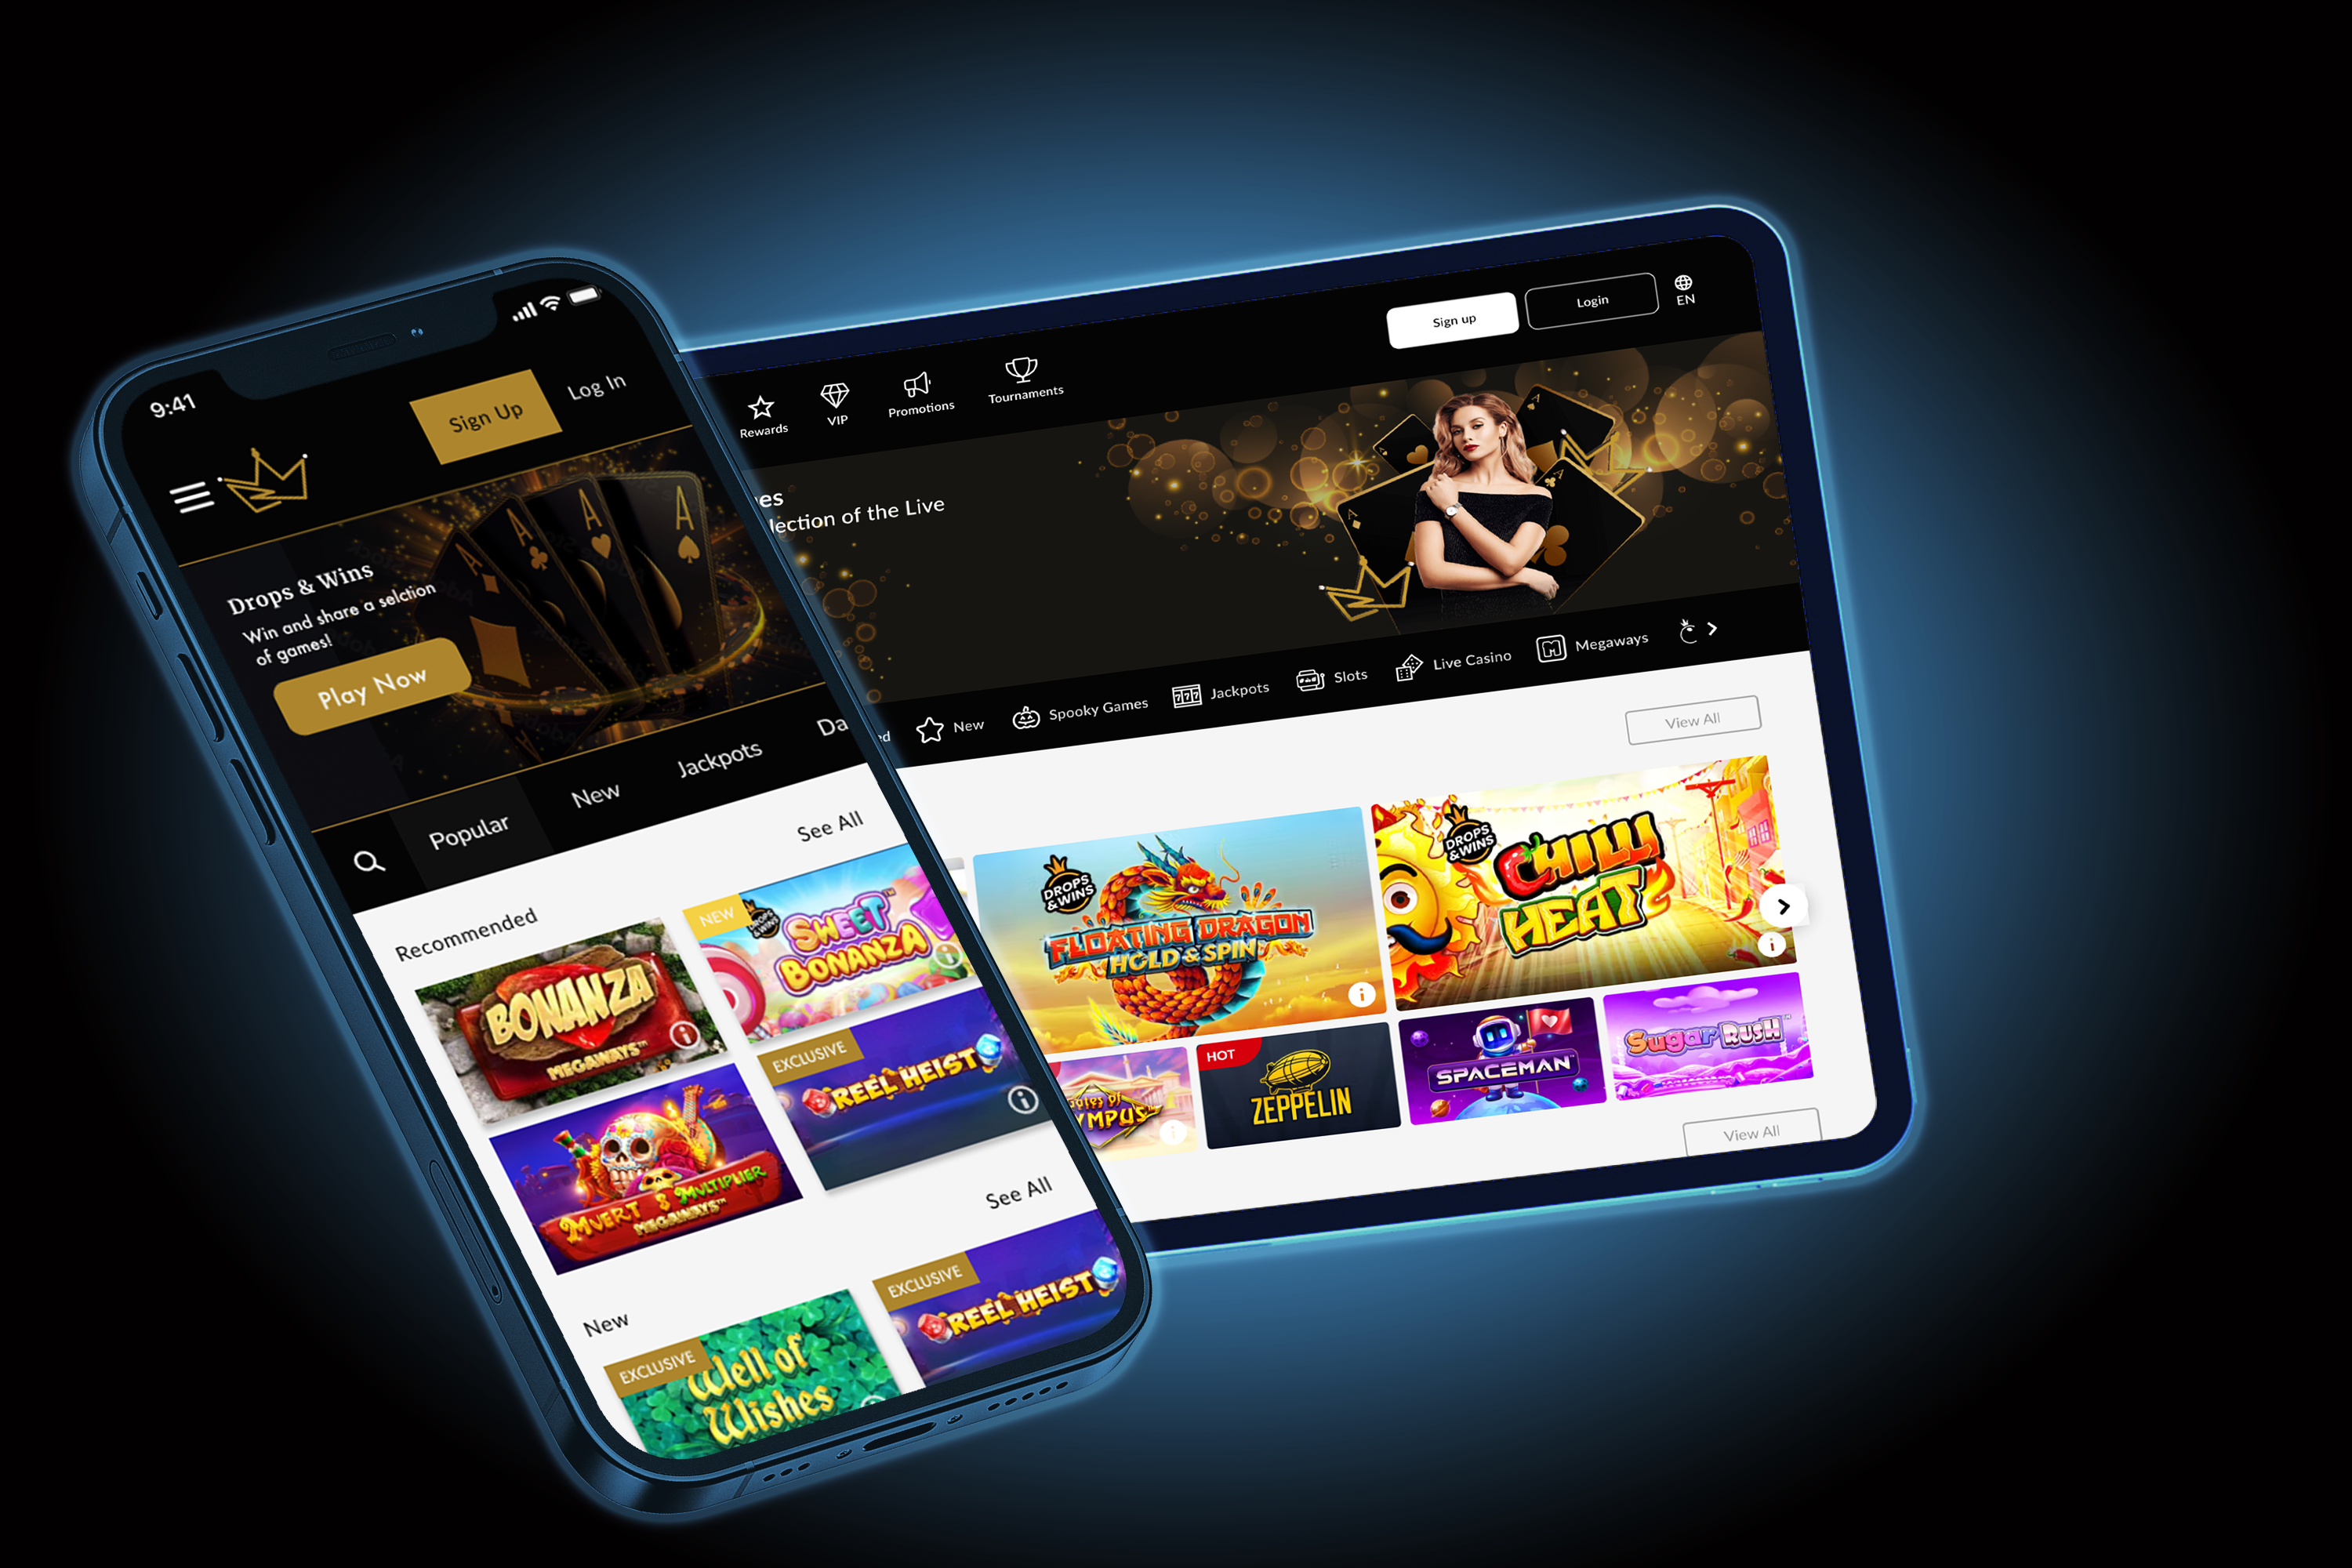 Thiết kế web app casino chuyên nghiệp, Thiết kế web app casino, Thiết kế web casino chuyên nghiệp, Thiết kế app casino chuyên nghiệp, Thiết kế casino chuyên nghiệp, Thiết kế web casino , Thiết kế app casino, dịch vụ Thiết kế web app casino chuyên nghiệp